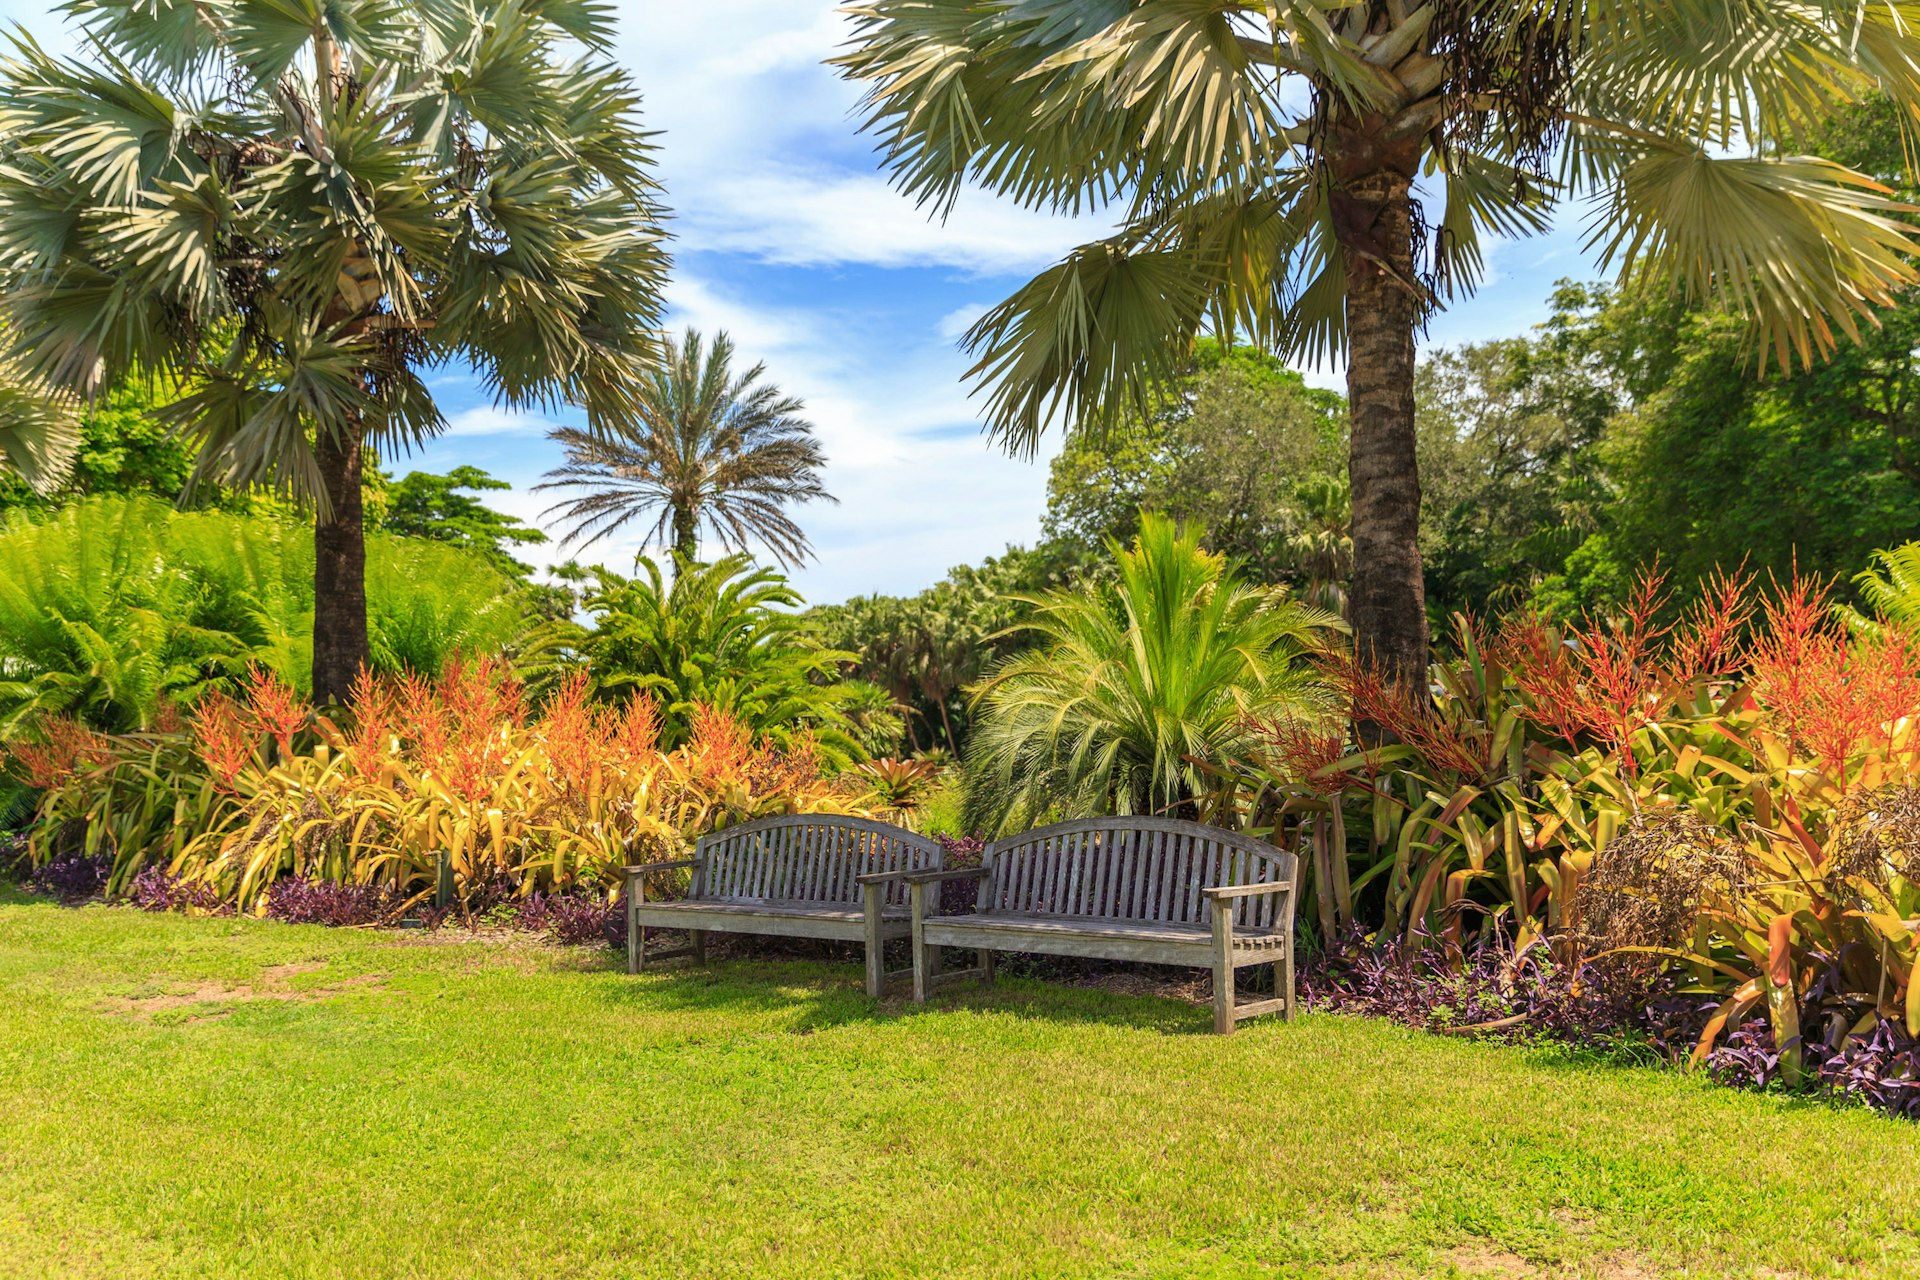 Fairchild tropical botanic garden in Miami, Florida